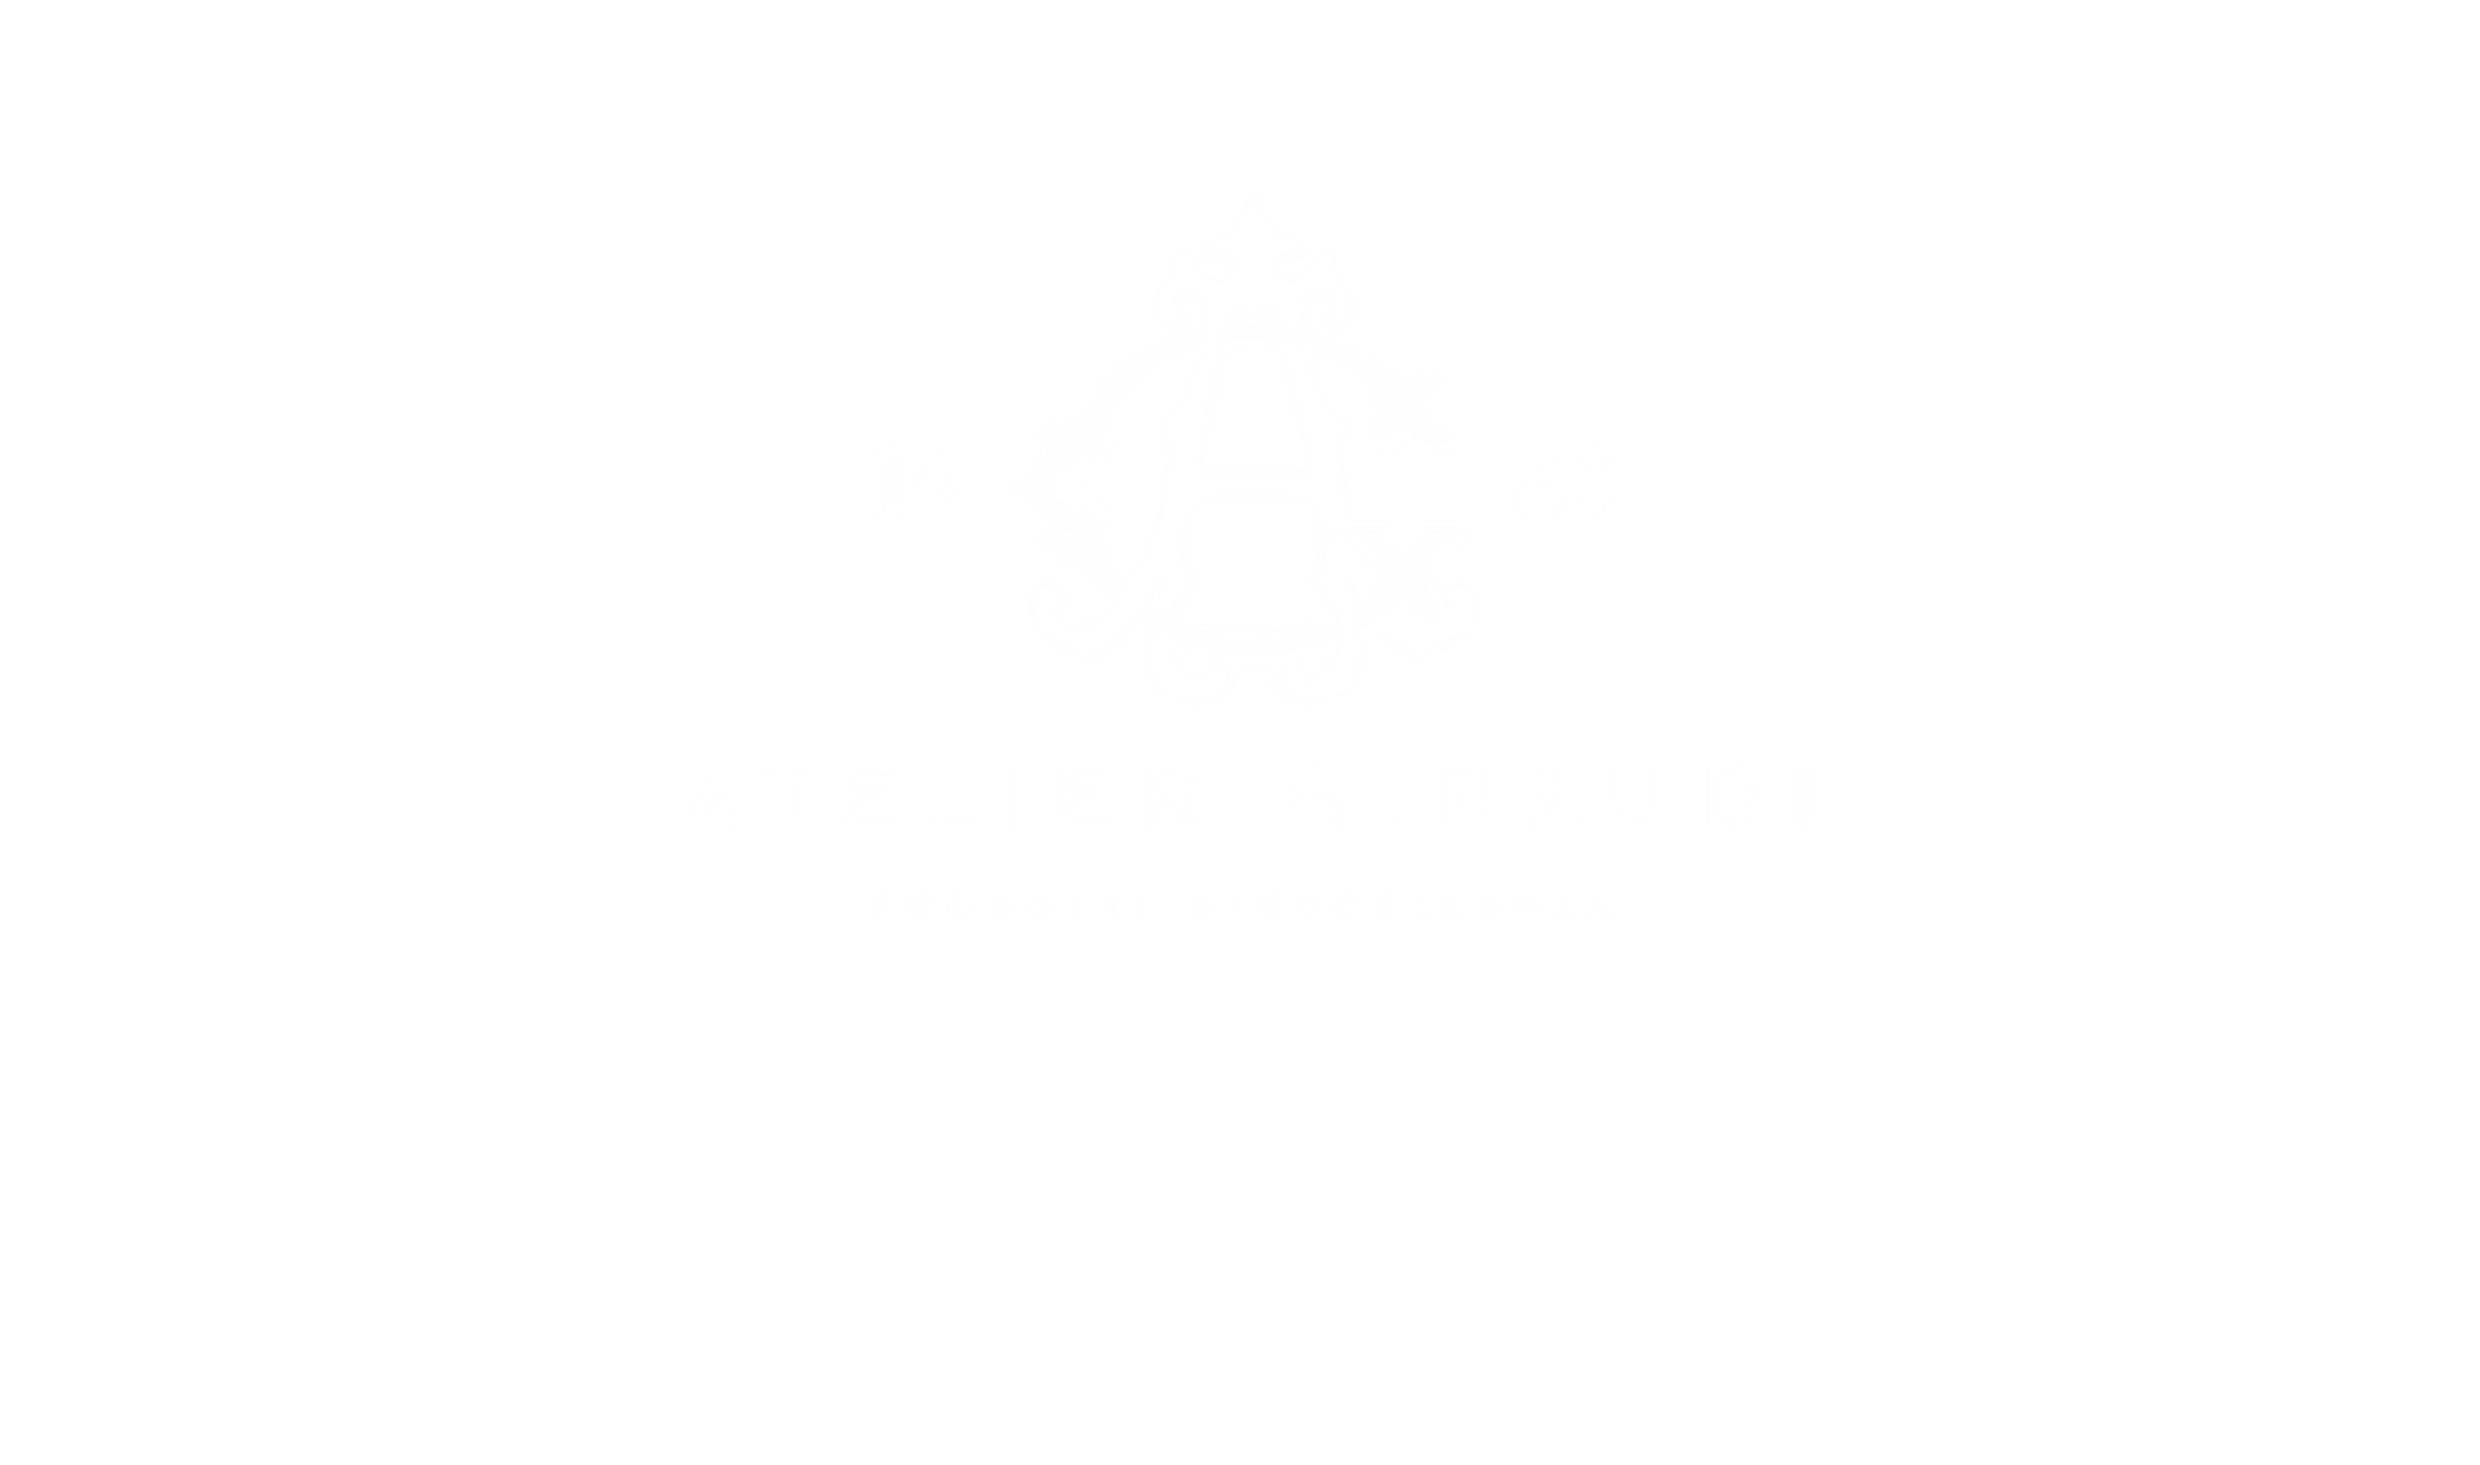 atelier giraudi collection logo